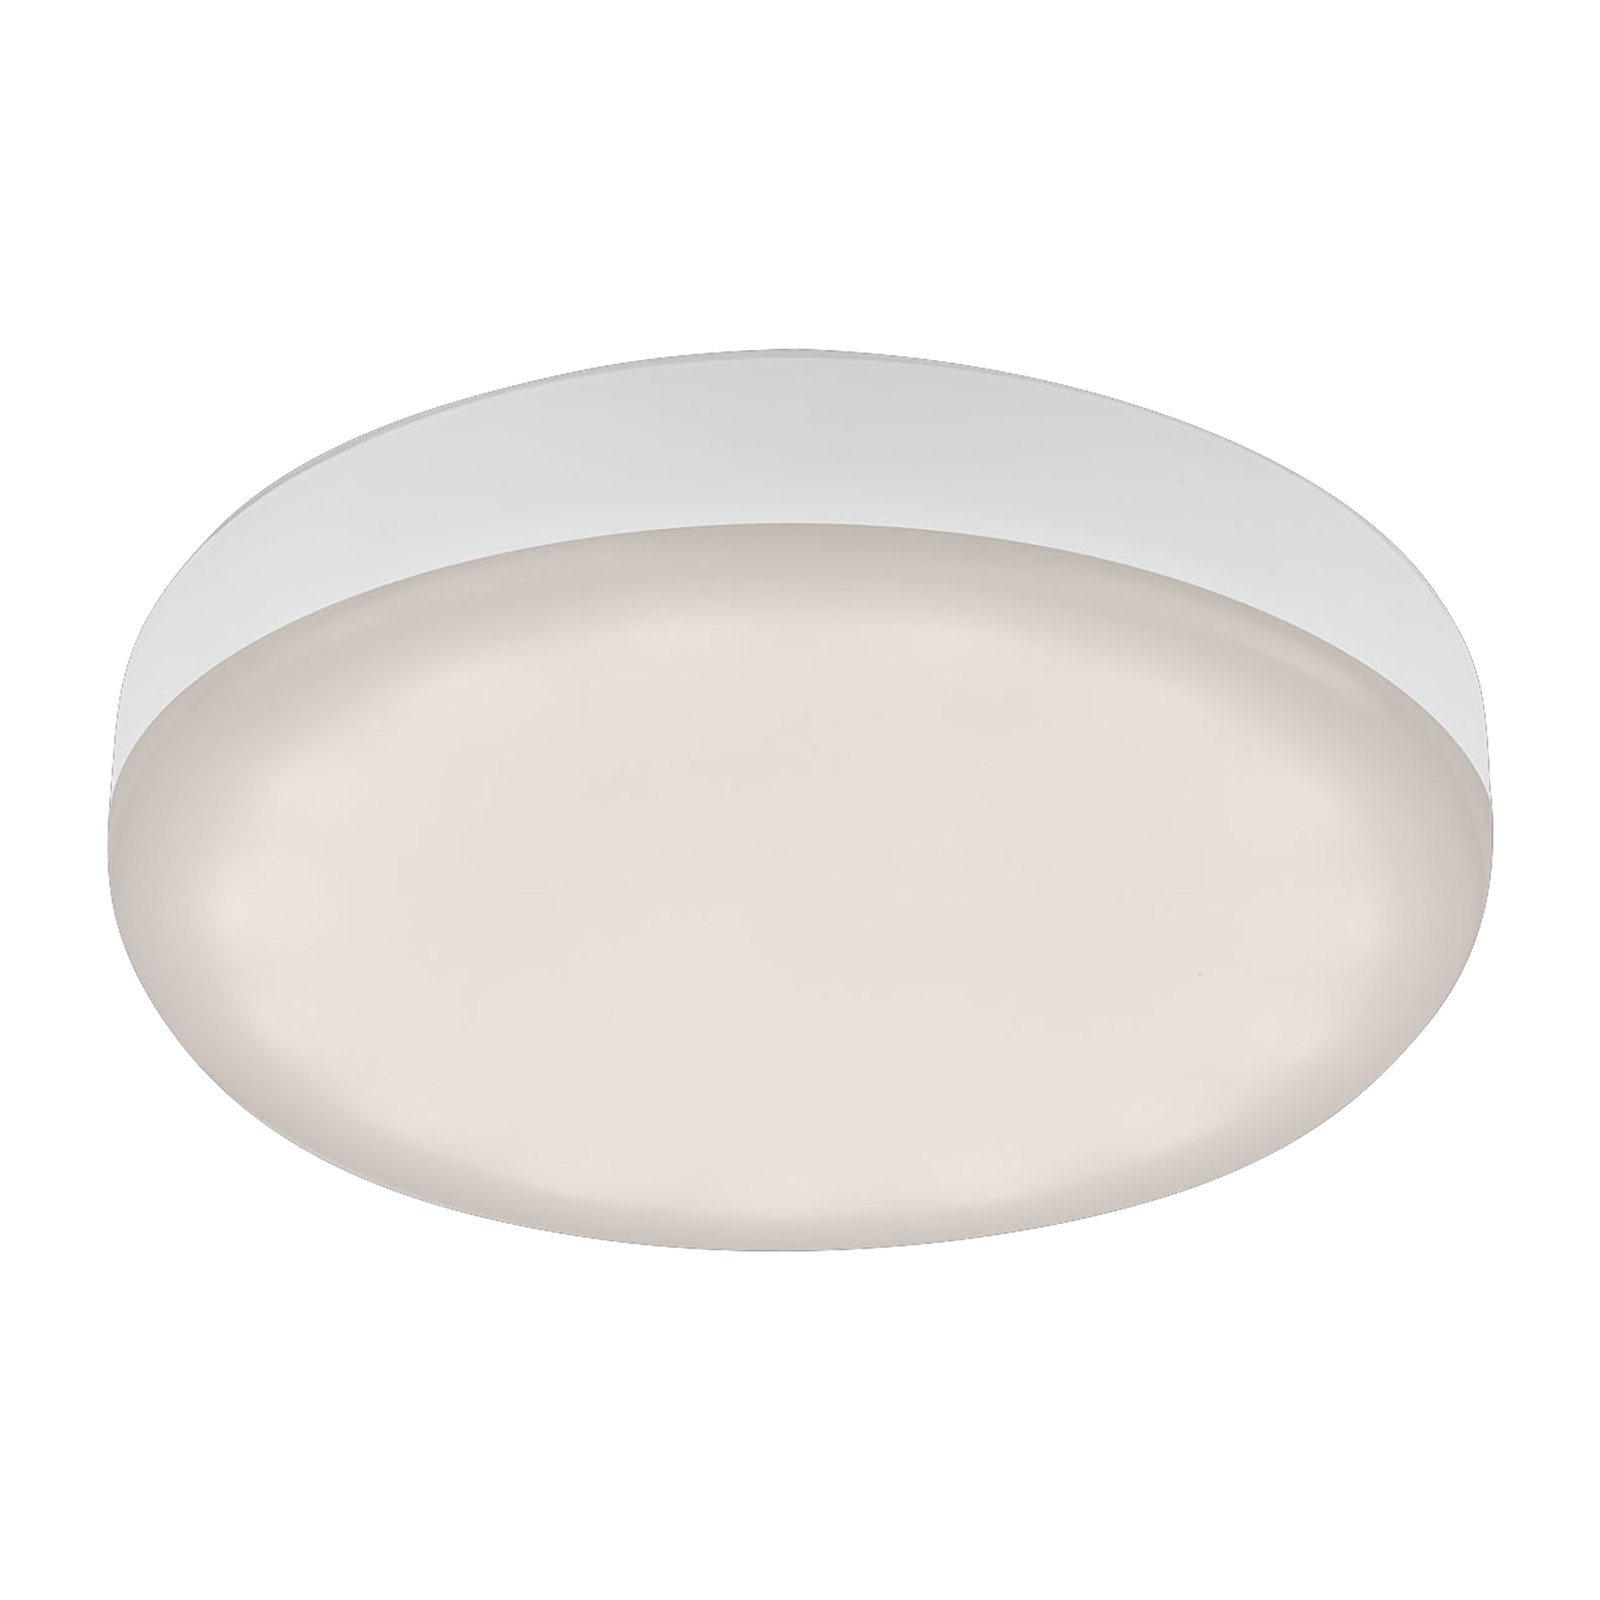 Plat LED downlight, white, Ø 7.5 cm, 4,000 K